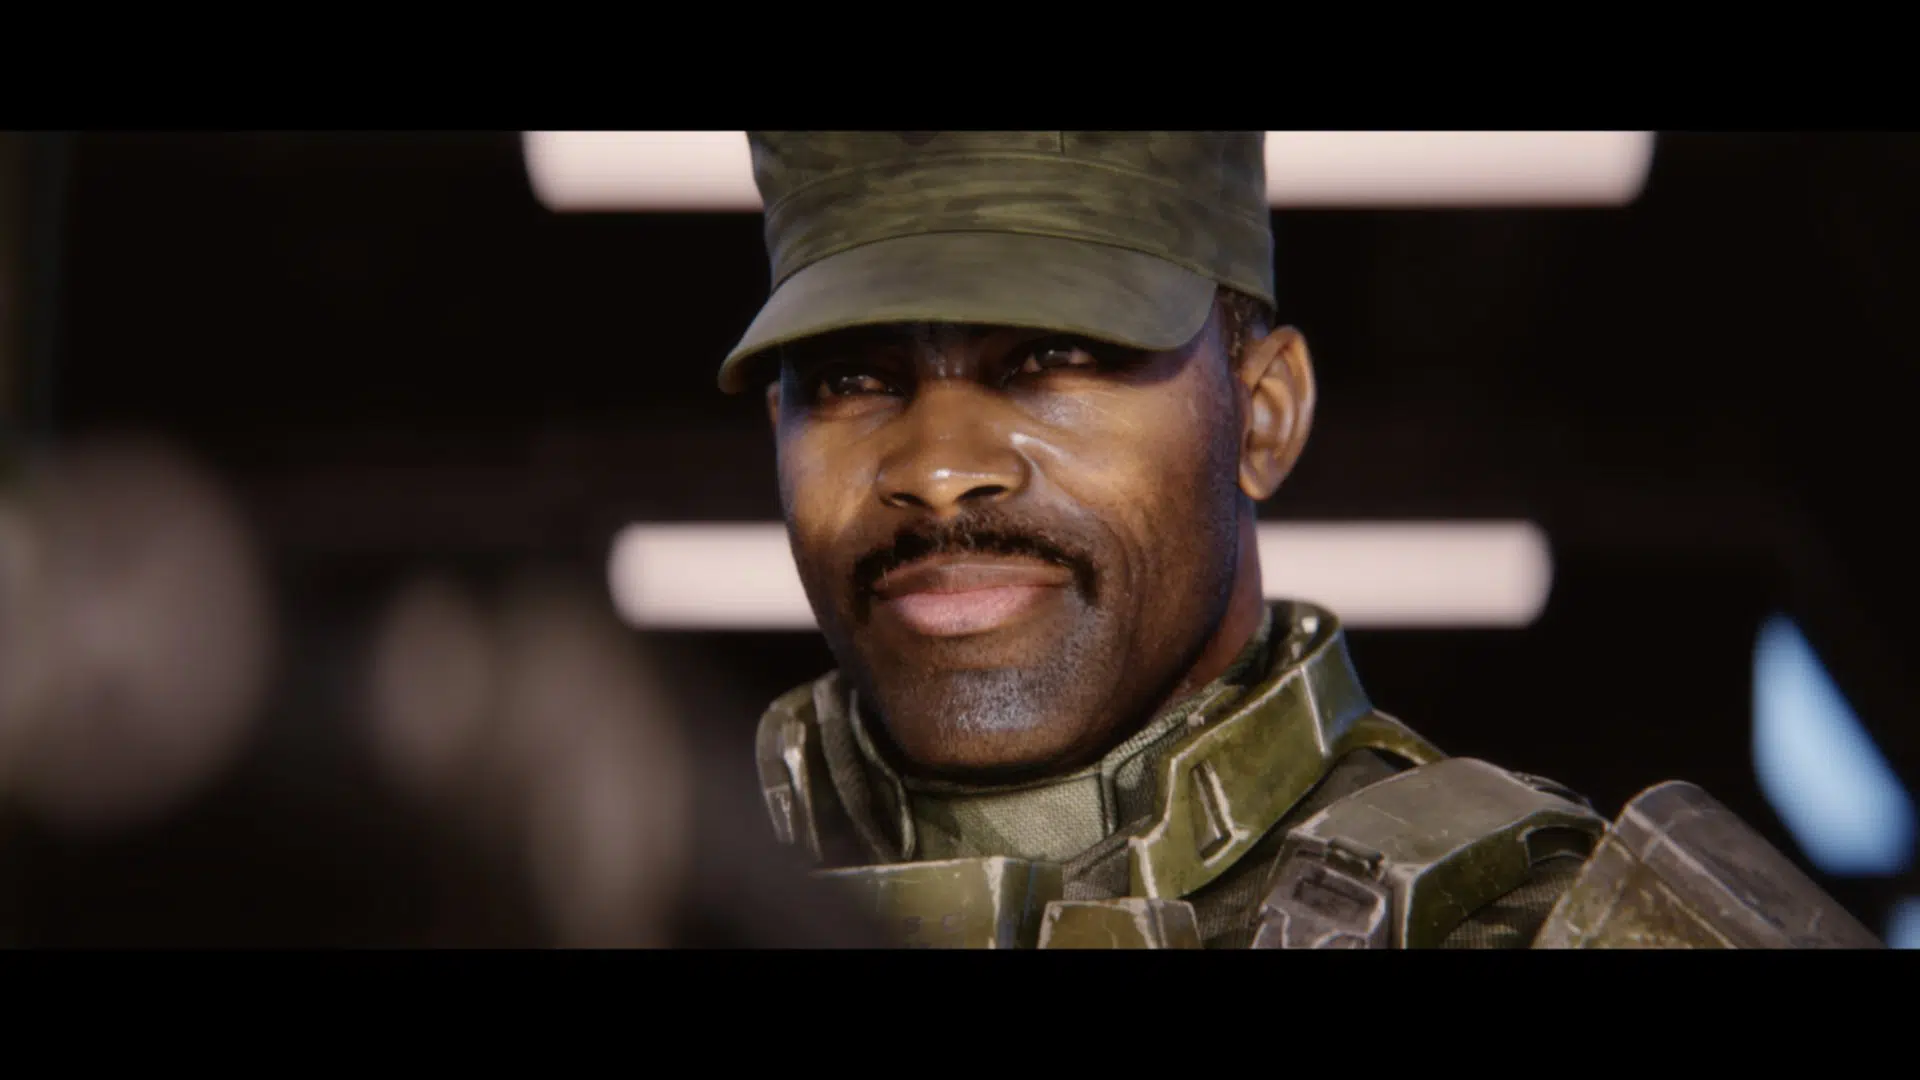  Histoire du sergent Avery Johnson Halo légende de l'origine comment il a survécu au Halo Alpha au combat Évolué 